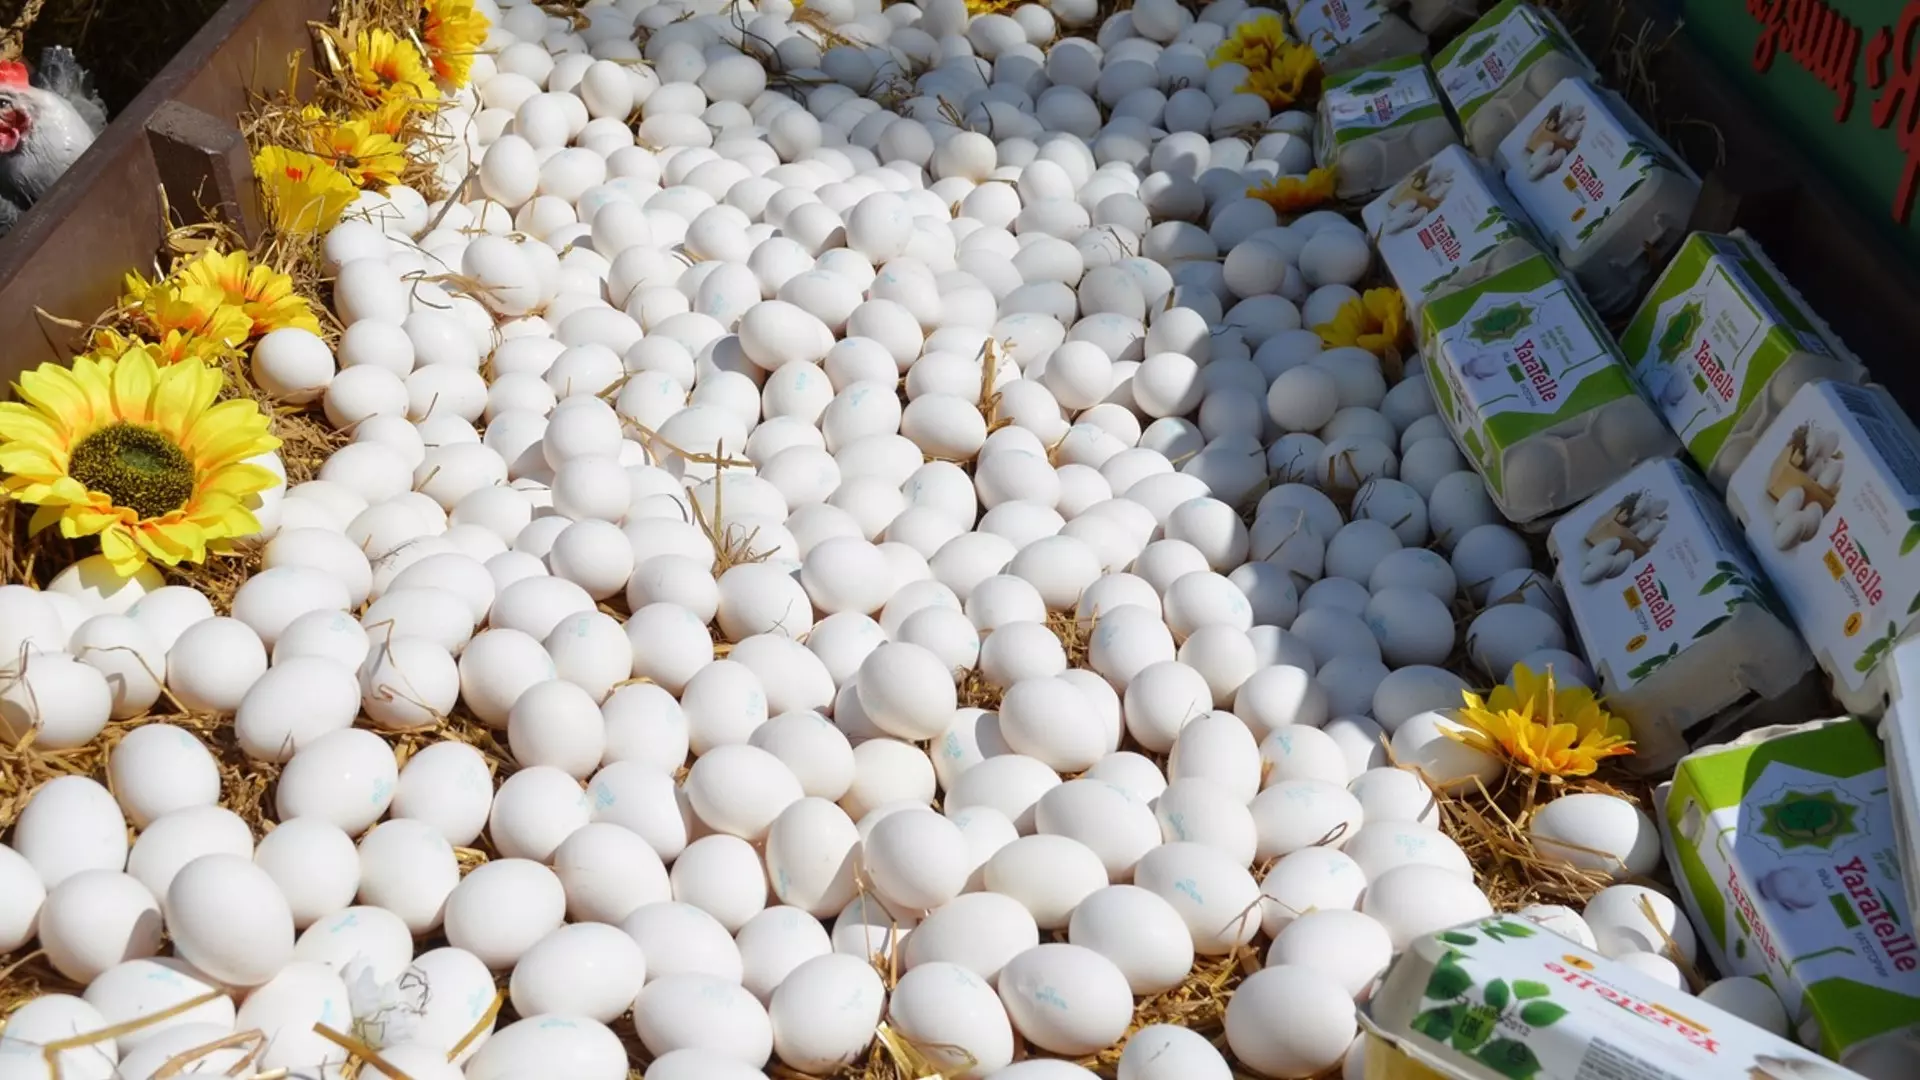 В Омске местный житель наткнулся на свалку яиц